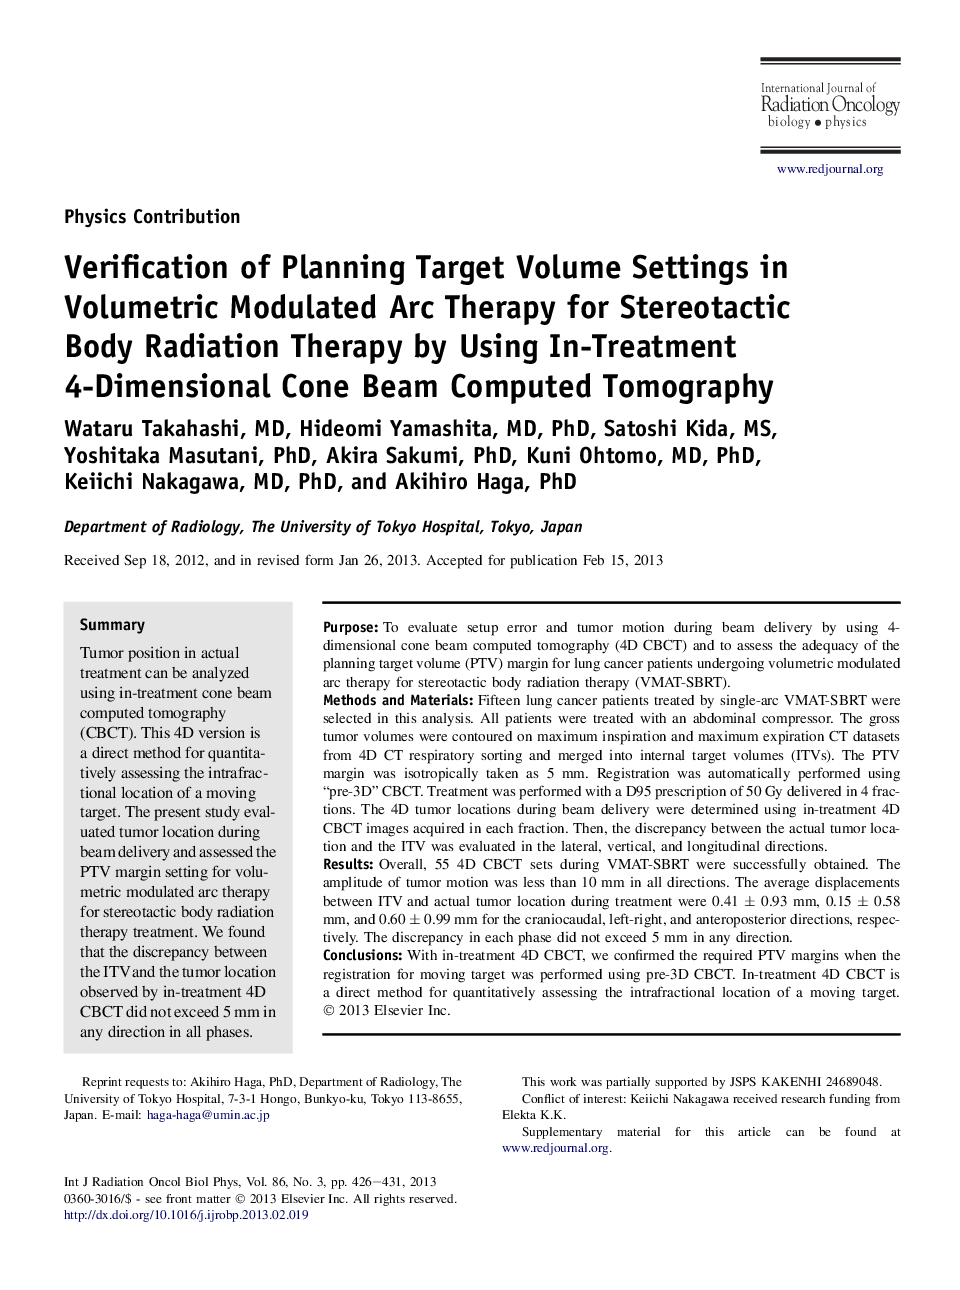 تأیید تنظیمات میزان هدف برنامه ریزی در درمان حرارتی مدولاسیون حجمی برای درمان رادیوتراپی بدن با استفاده از روش توموگرافی کامپیوتری پرتوهای مخروطی 4 بعدی 